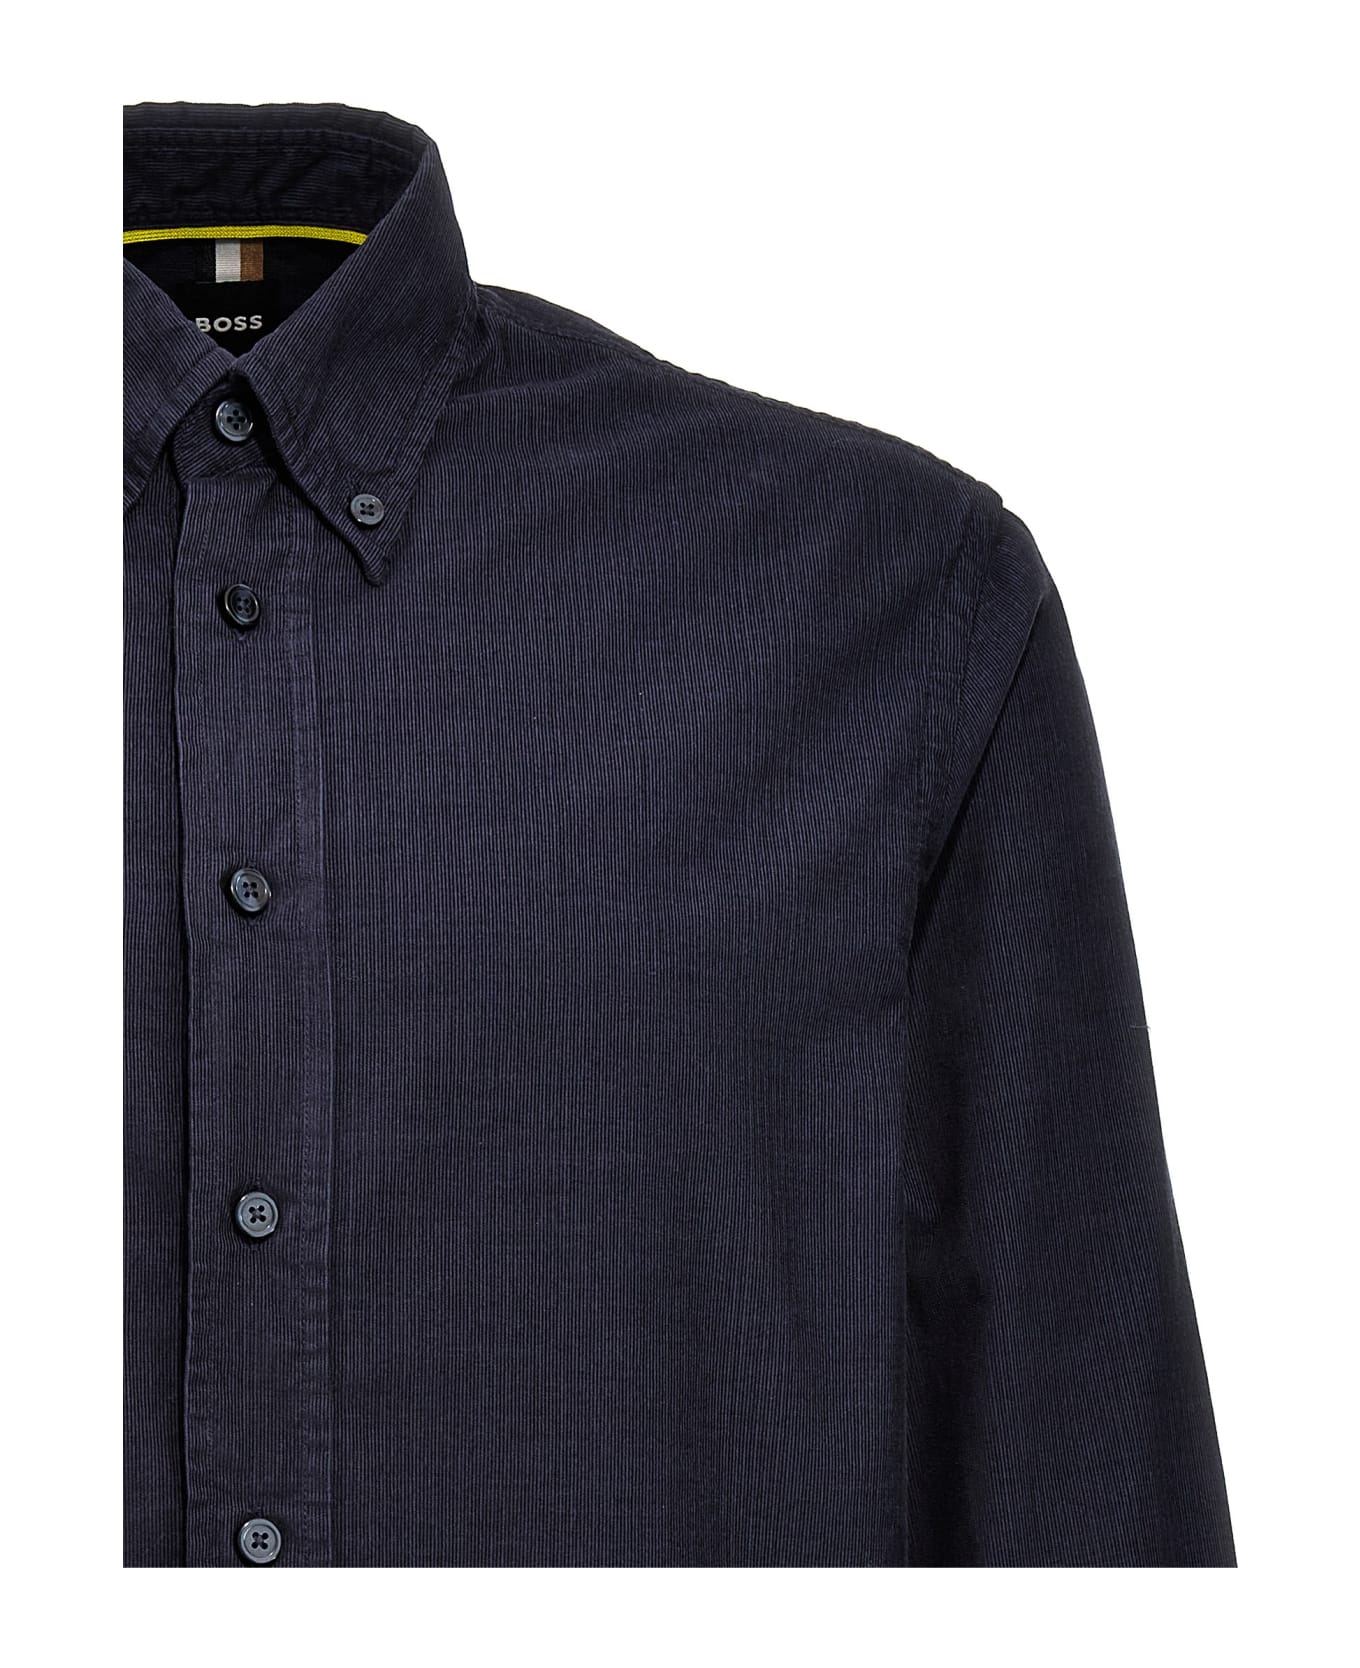 Hugo Boss 'owen' Shirt - Blue